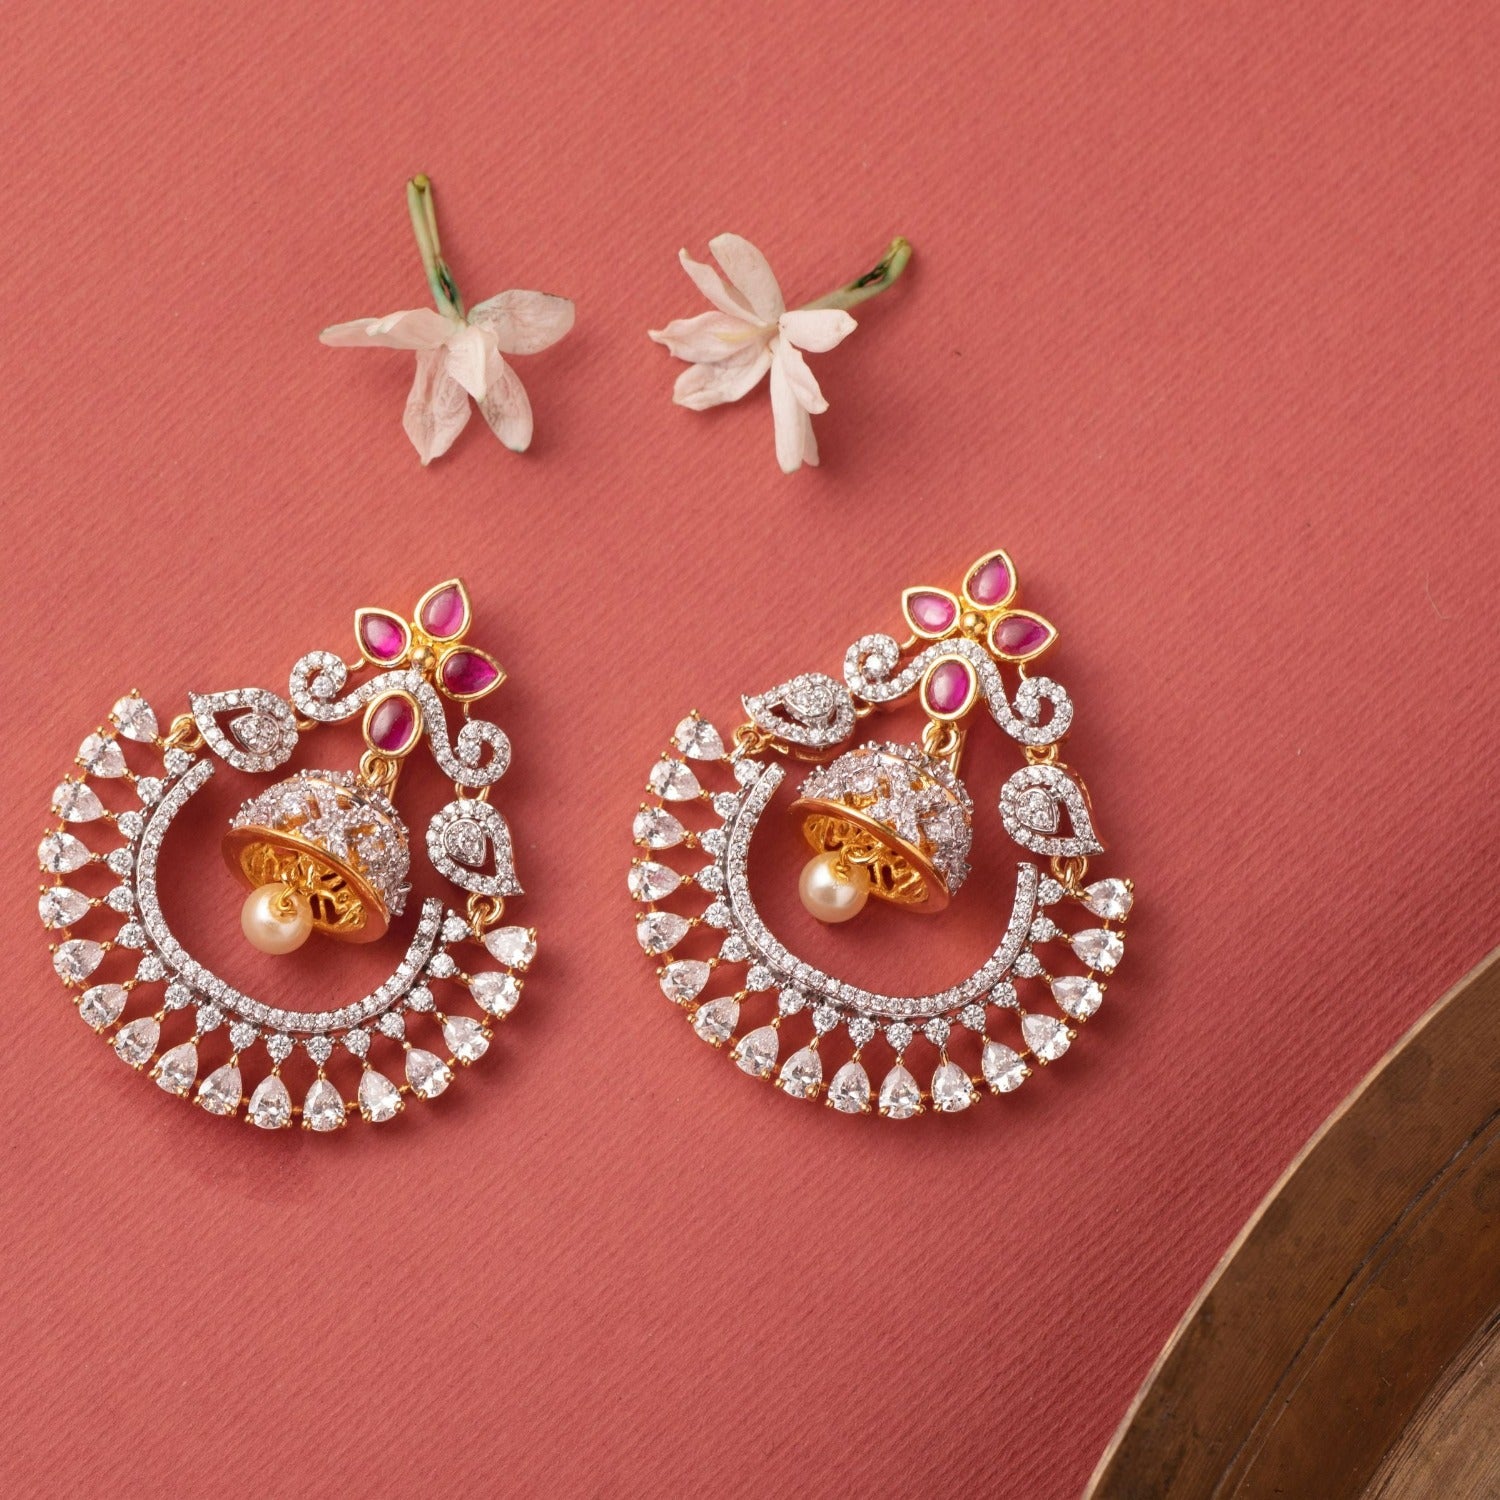 Amazon.com: Indian Jewelry Earrings Jhumka